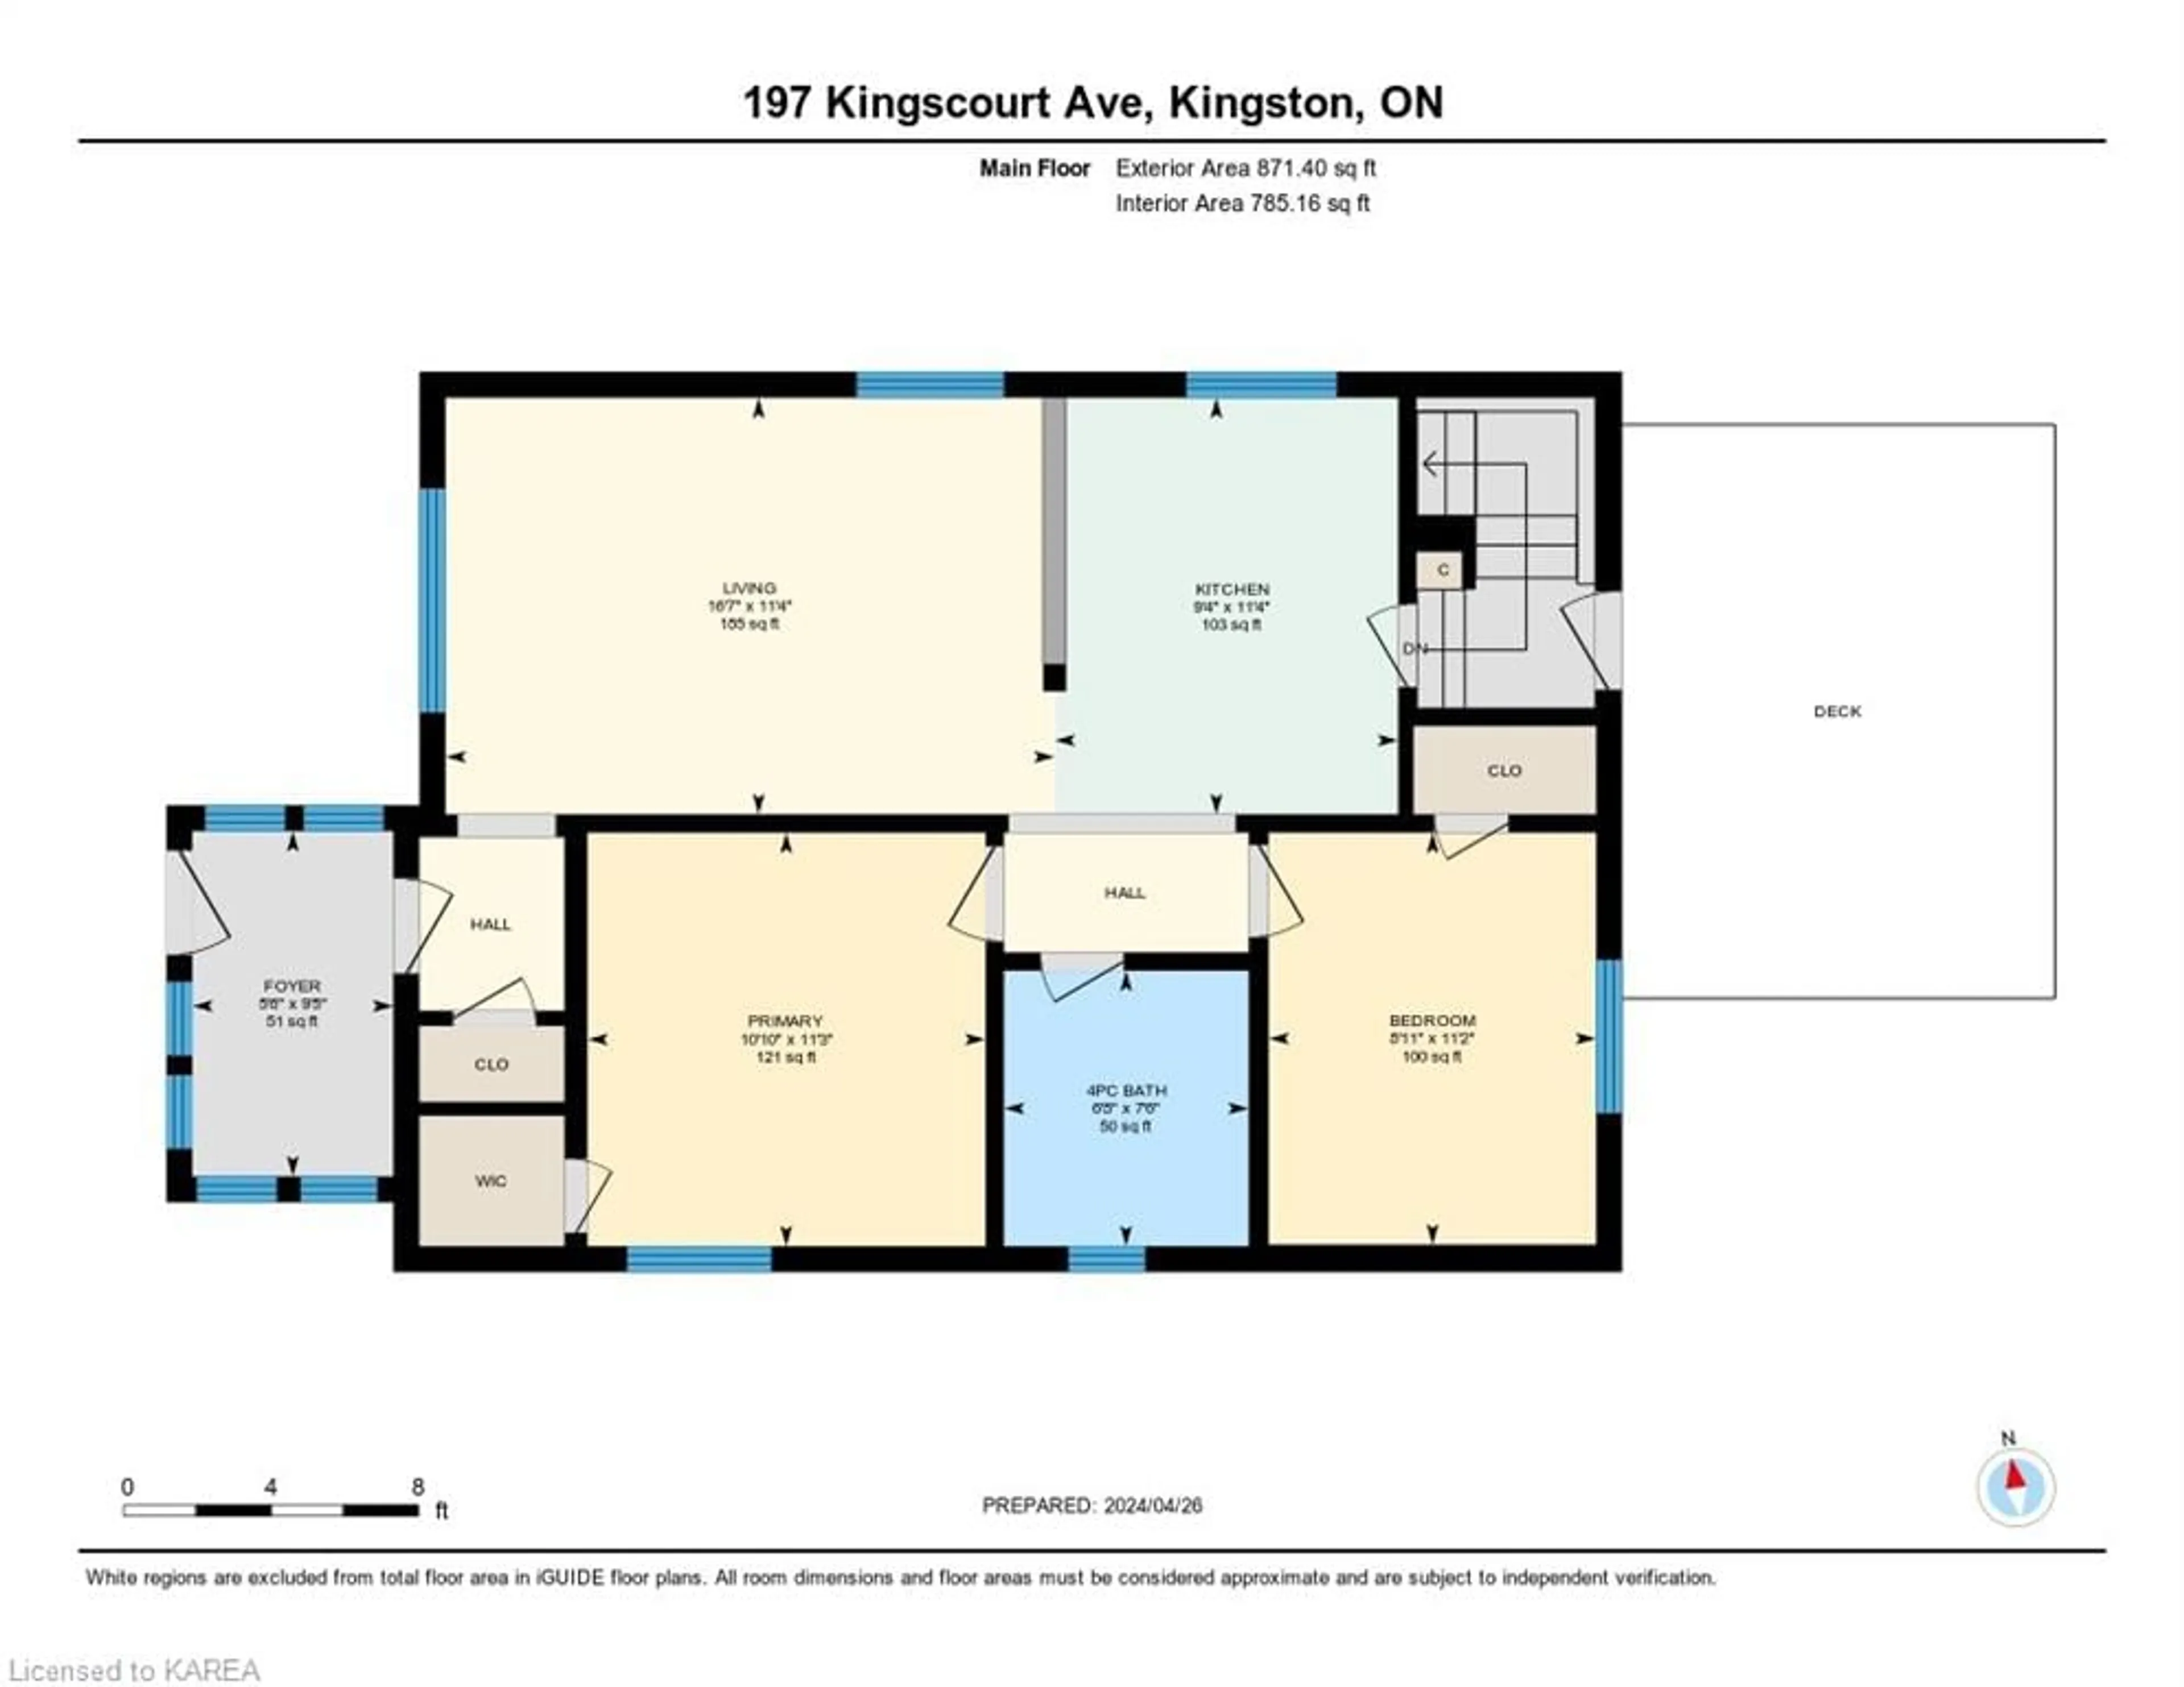 Floor plan for 197 Kingscourt Ave, Kingston Ontario K7K 4P7